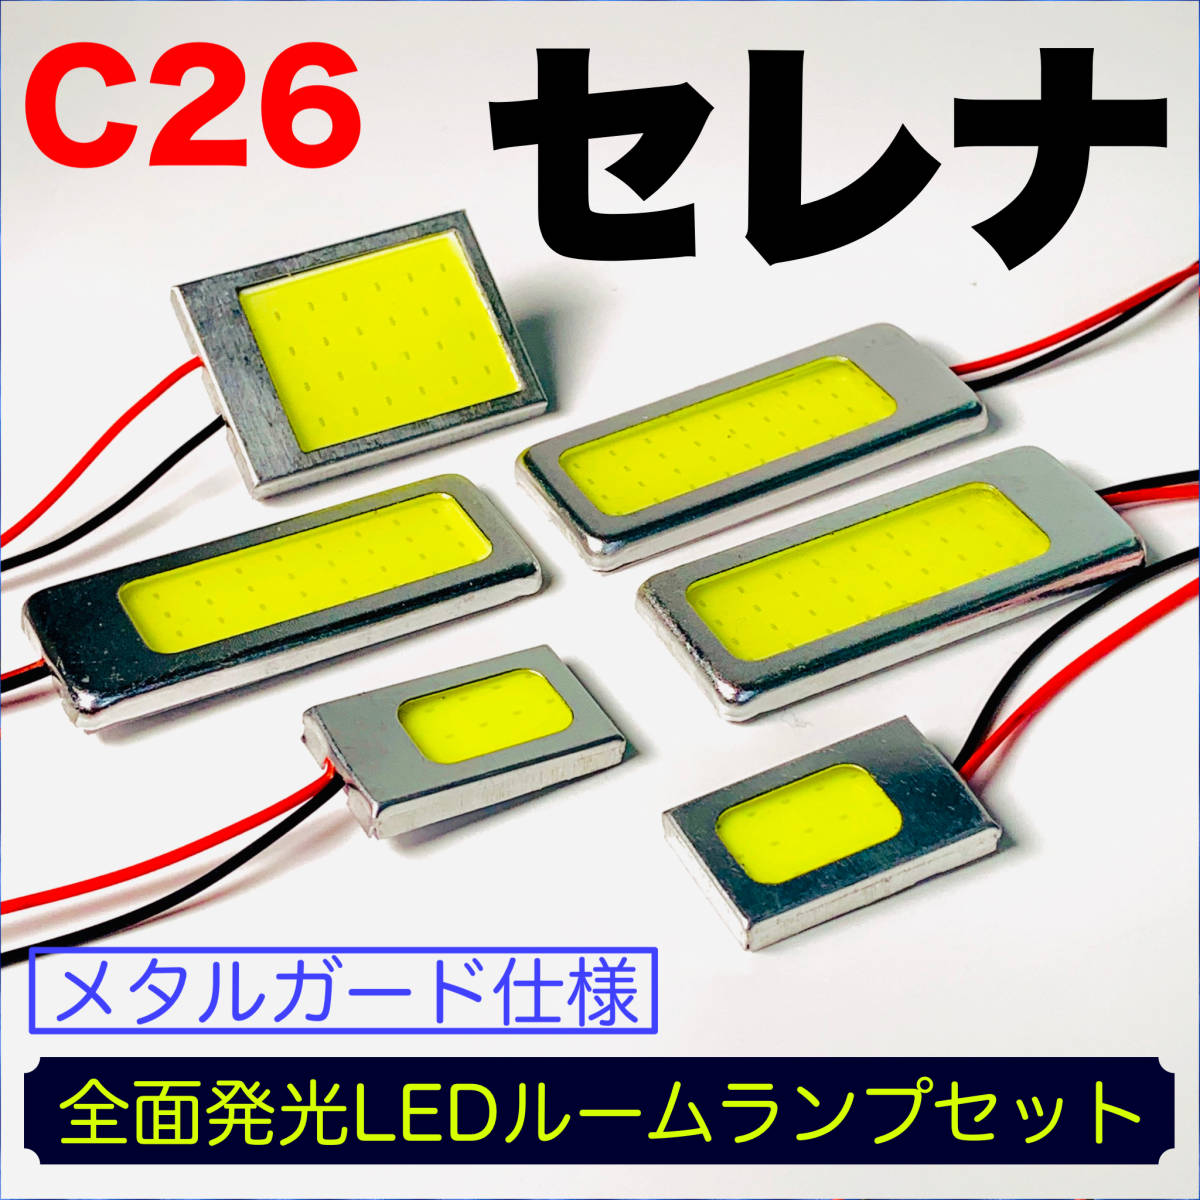 C26 セレナ 適合 LED ルームランプセット 耐久型 COB全面発光 T10 LED基盤 室内灯 読書灯 ホワイト 日産_画像1